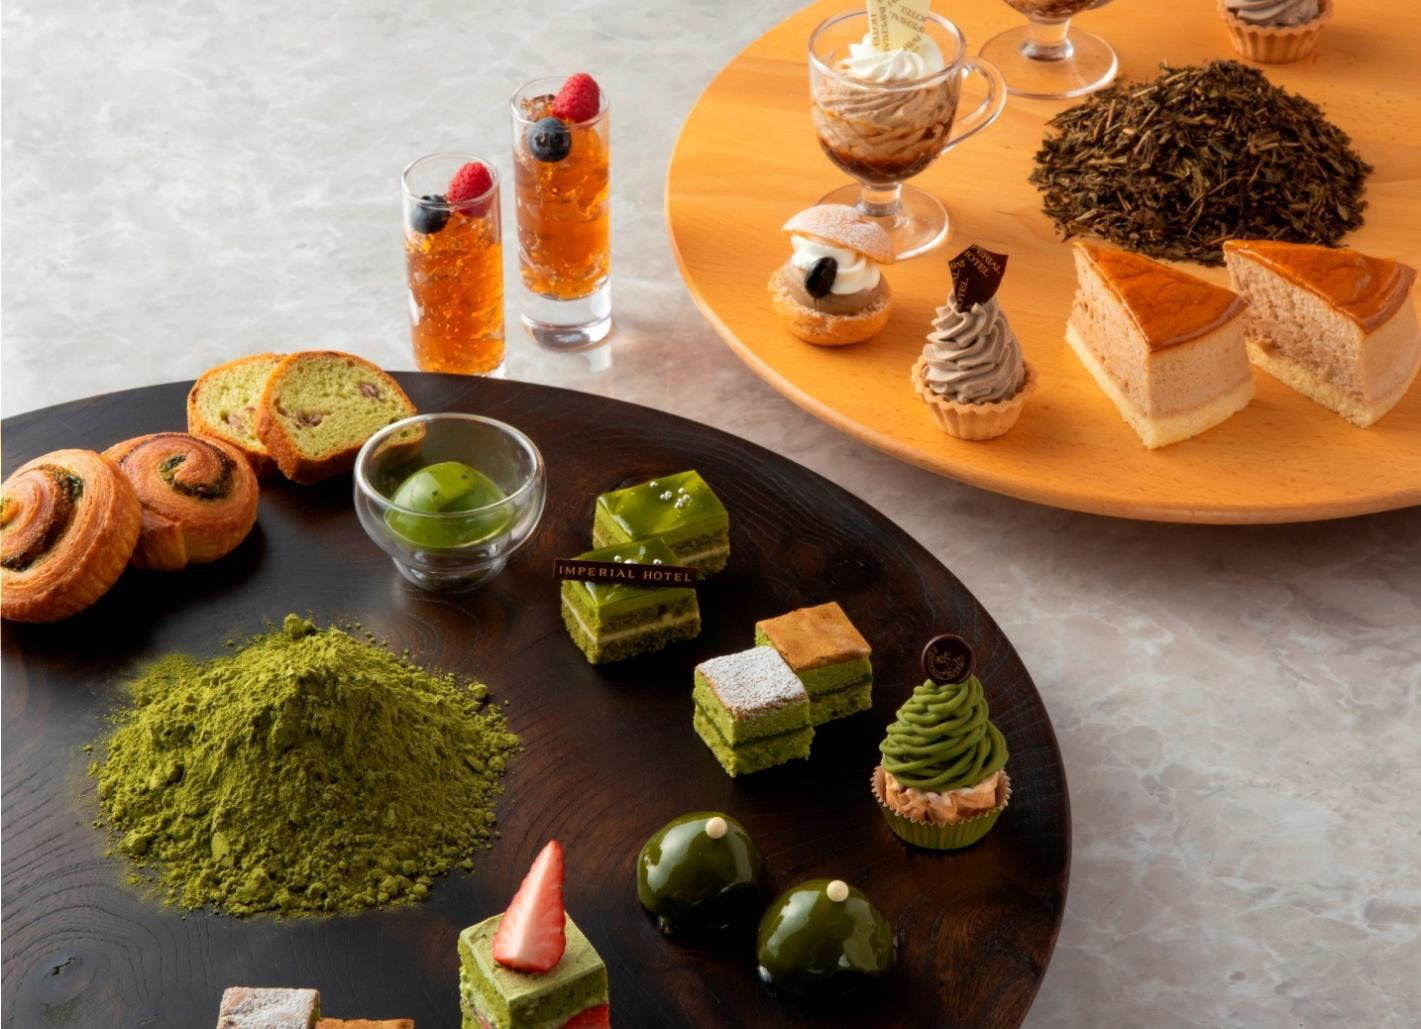 福寿園×帝国ホテル夏のスイーツビュッフェ、抹茶とほうじ茶のソフトクリームやケーキ | 写真